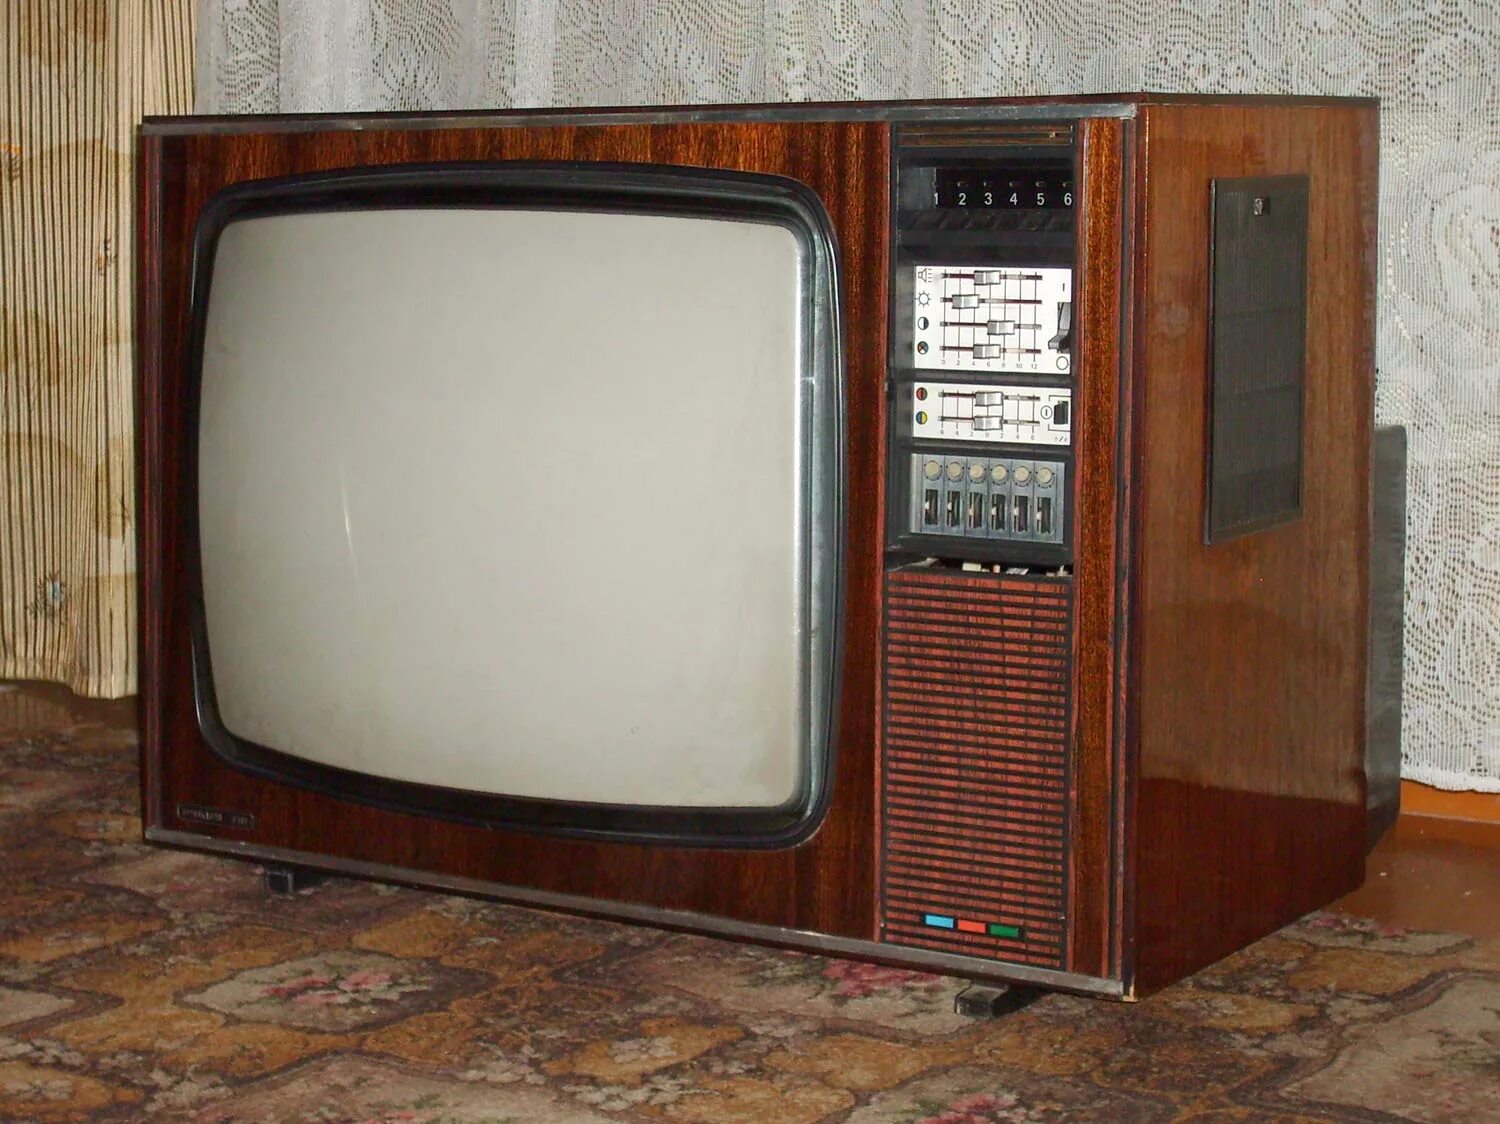 Телевизор Рубин 718. Телевизор Рубин 714. Цветной телевизор электрон 718. Телевизор Рубин СССР цветной.